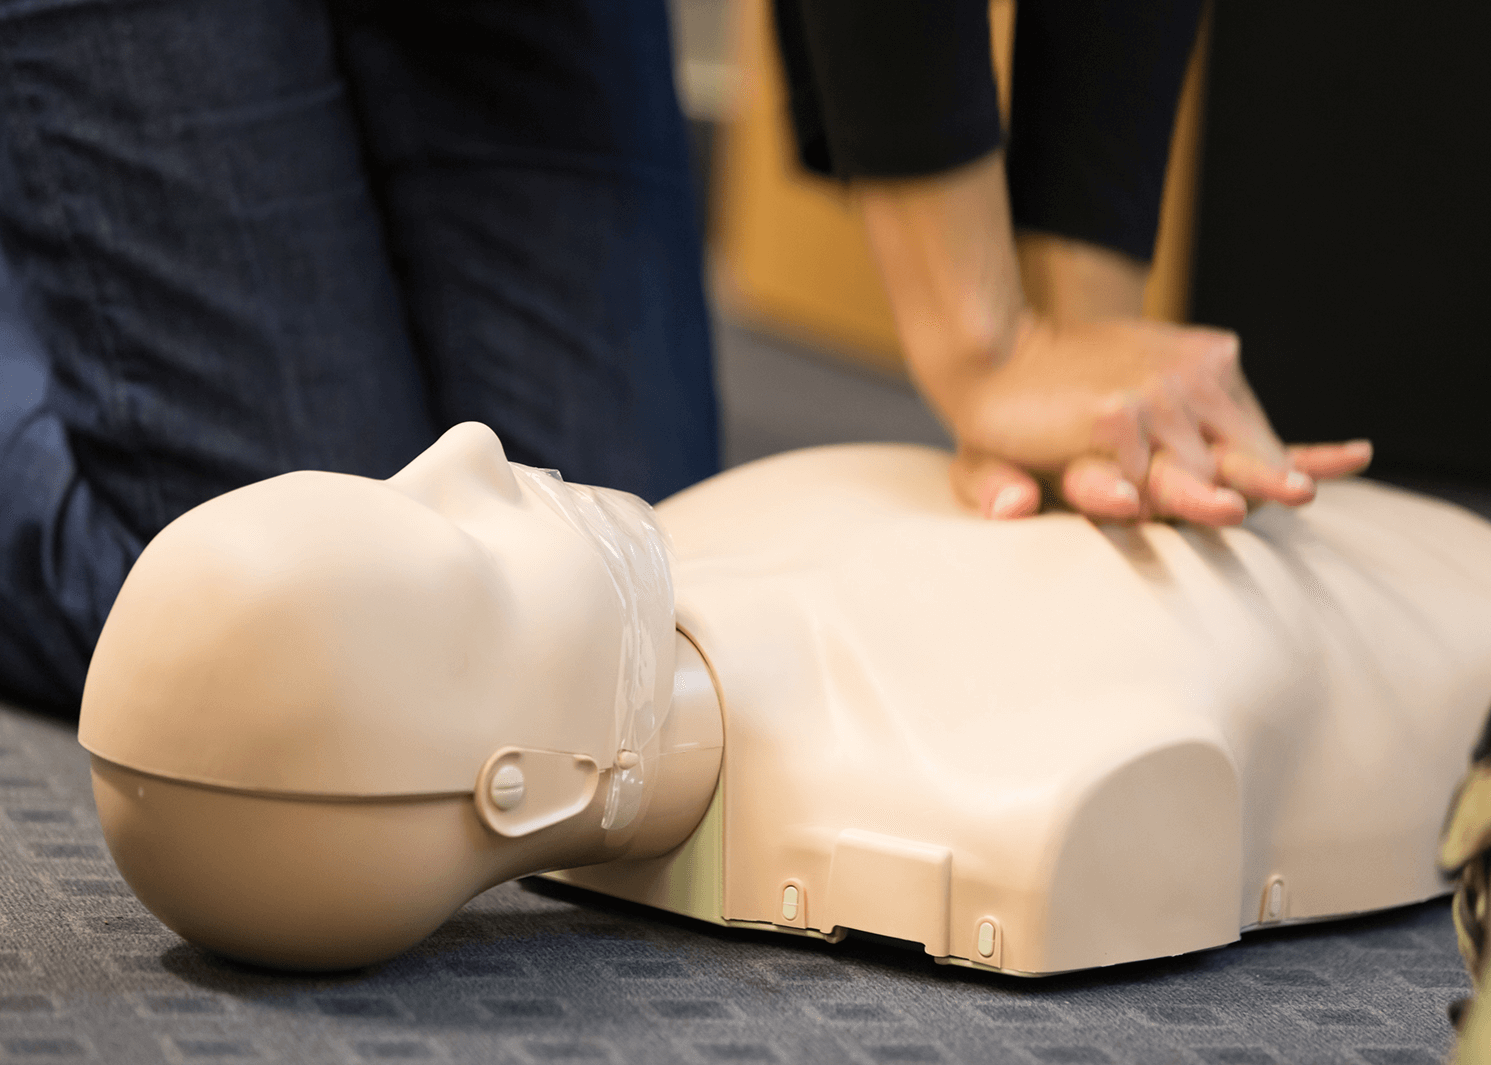 CPR Certification Online cpr certification online